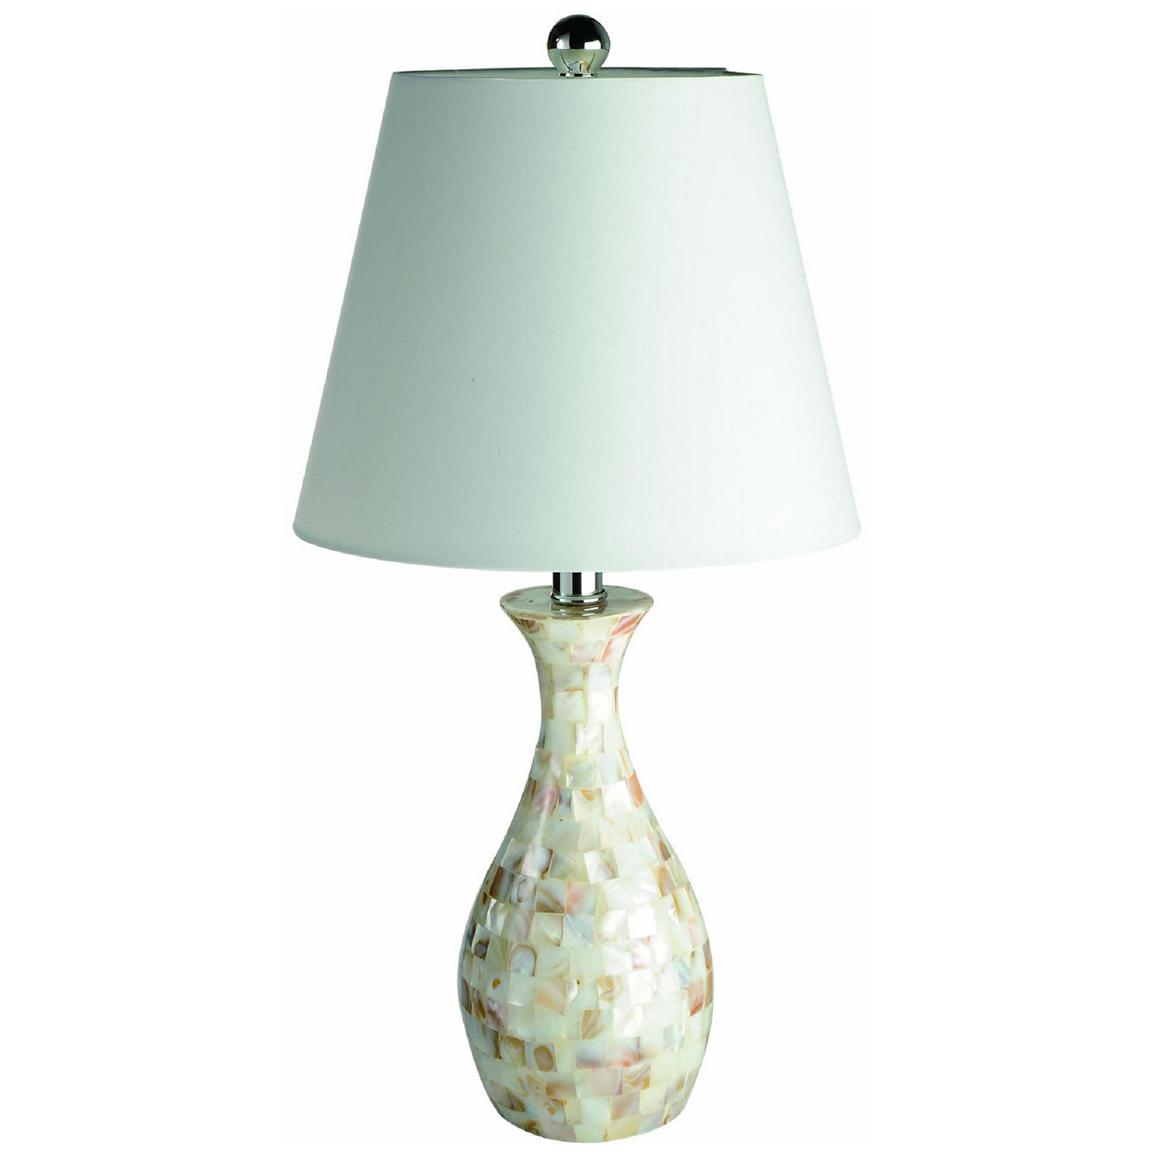 Elegant Designs Trendy Seashell Tiled Table Lamp 421522